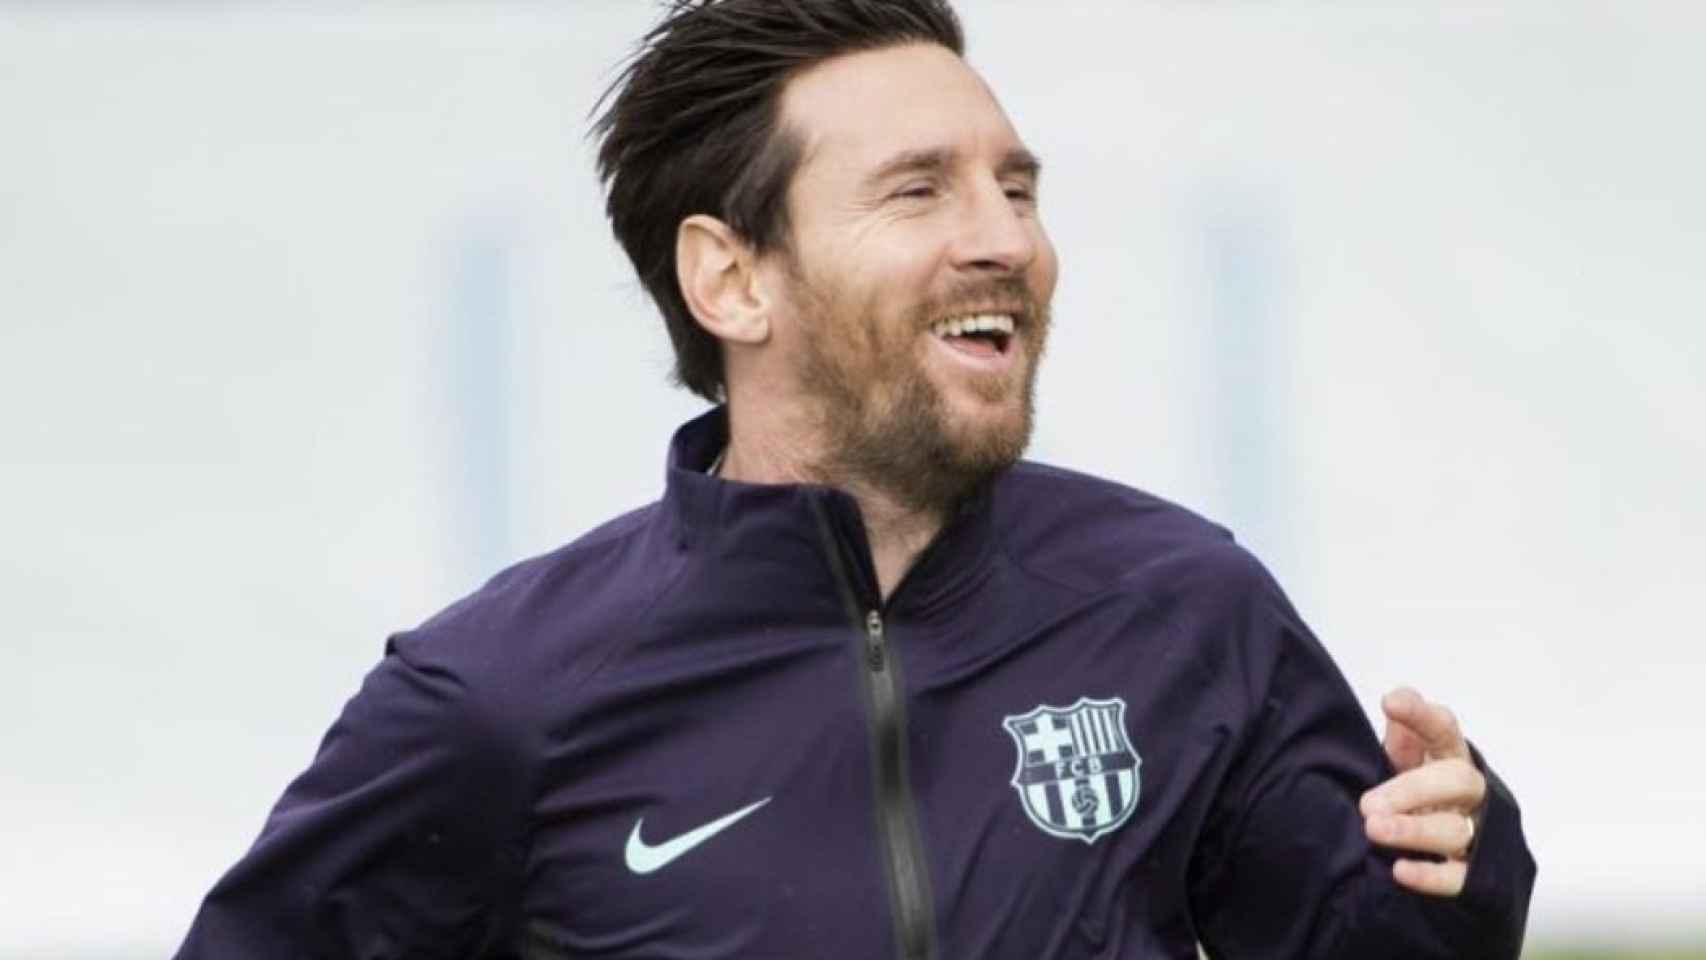 Una foto de Messi en el entrenamiento del Barça / Instagram